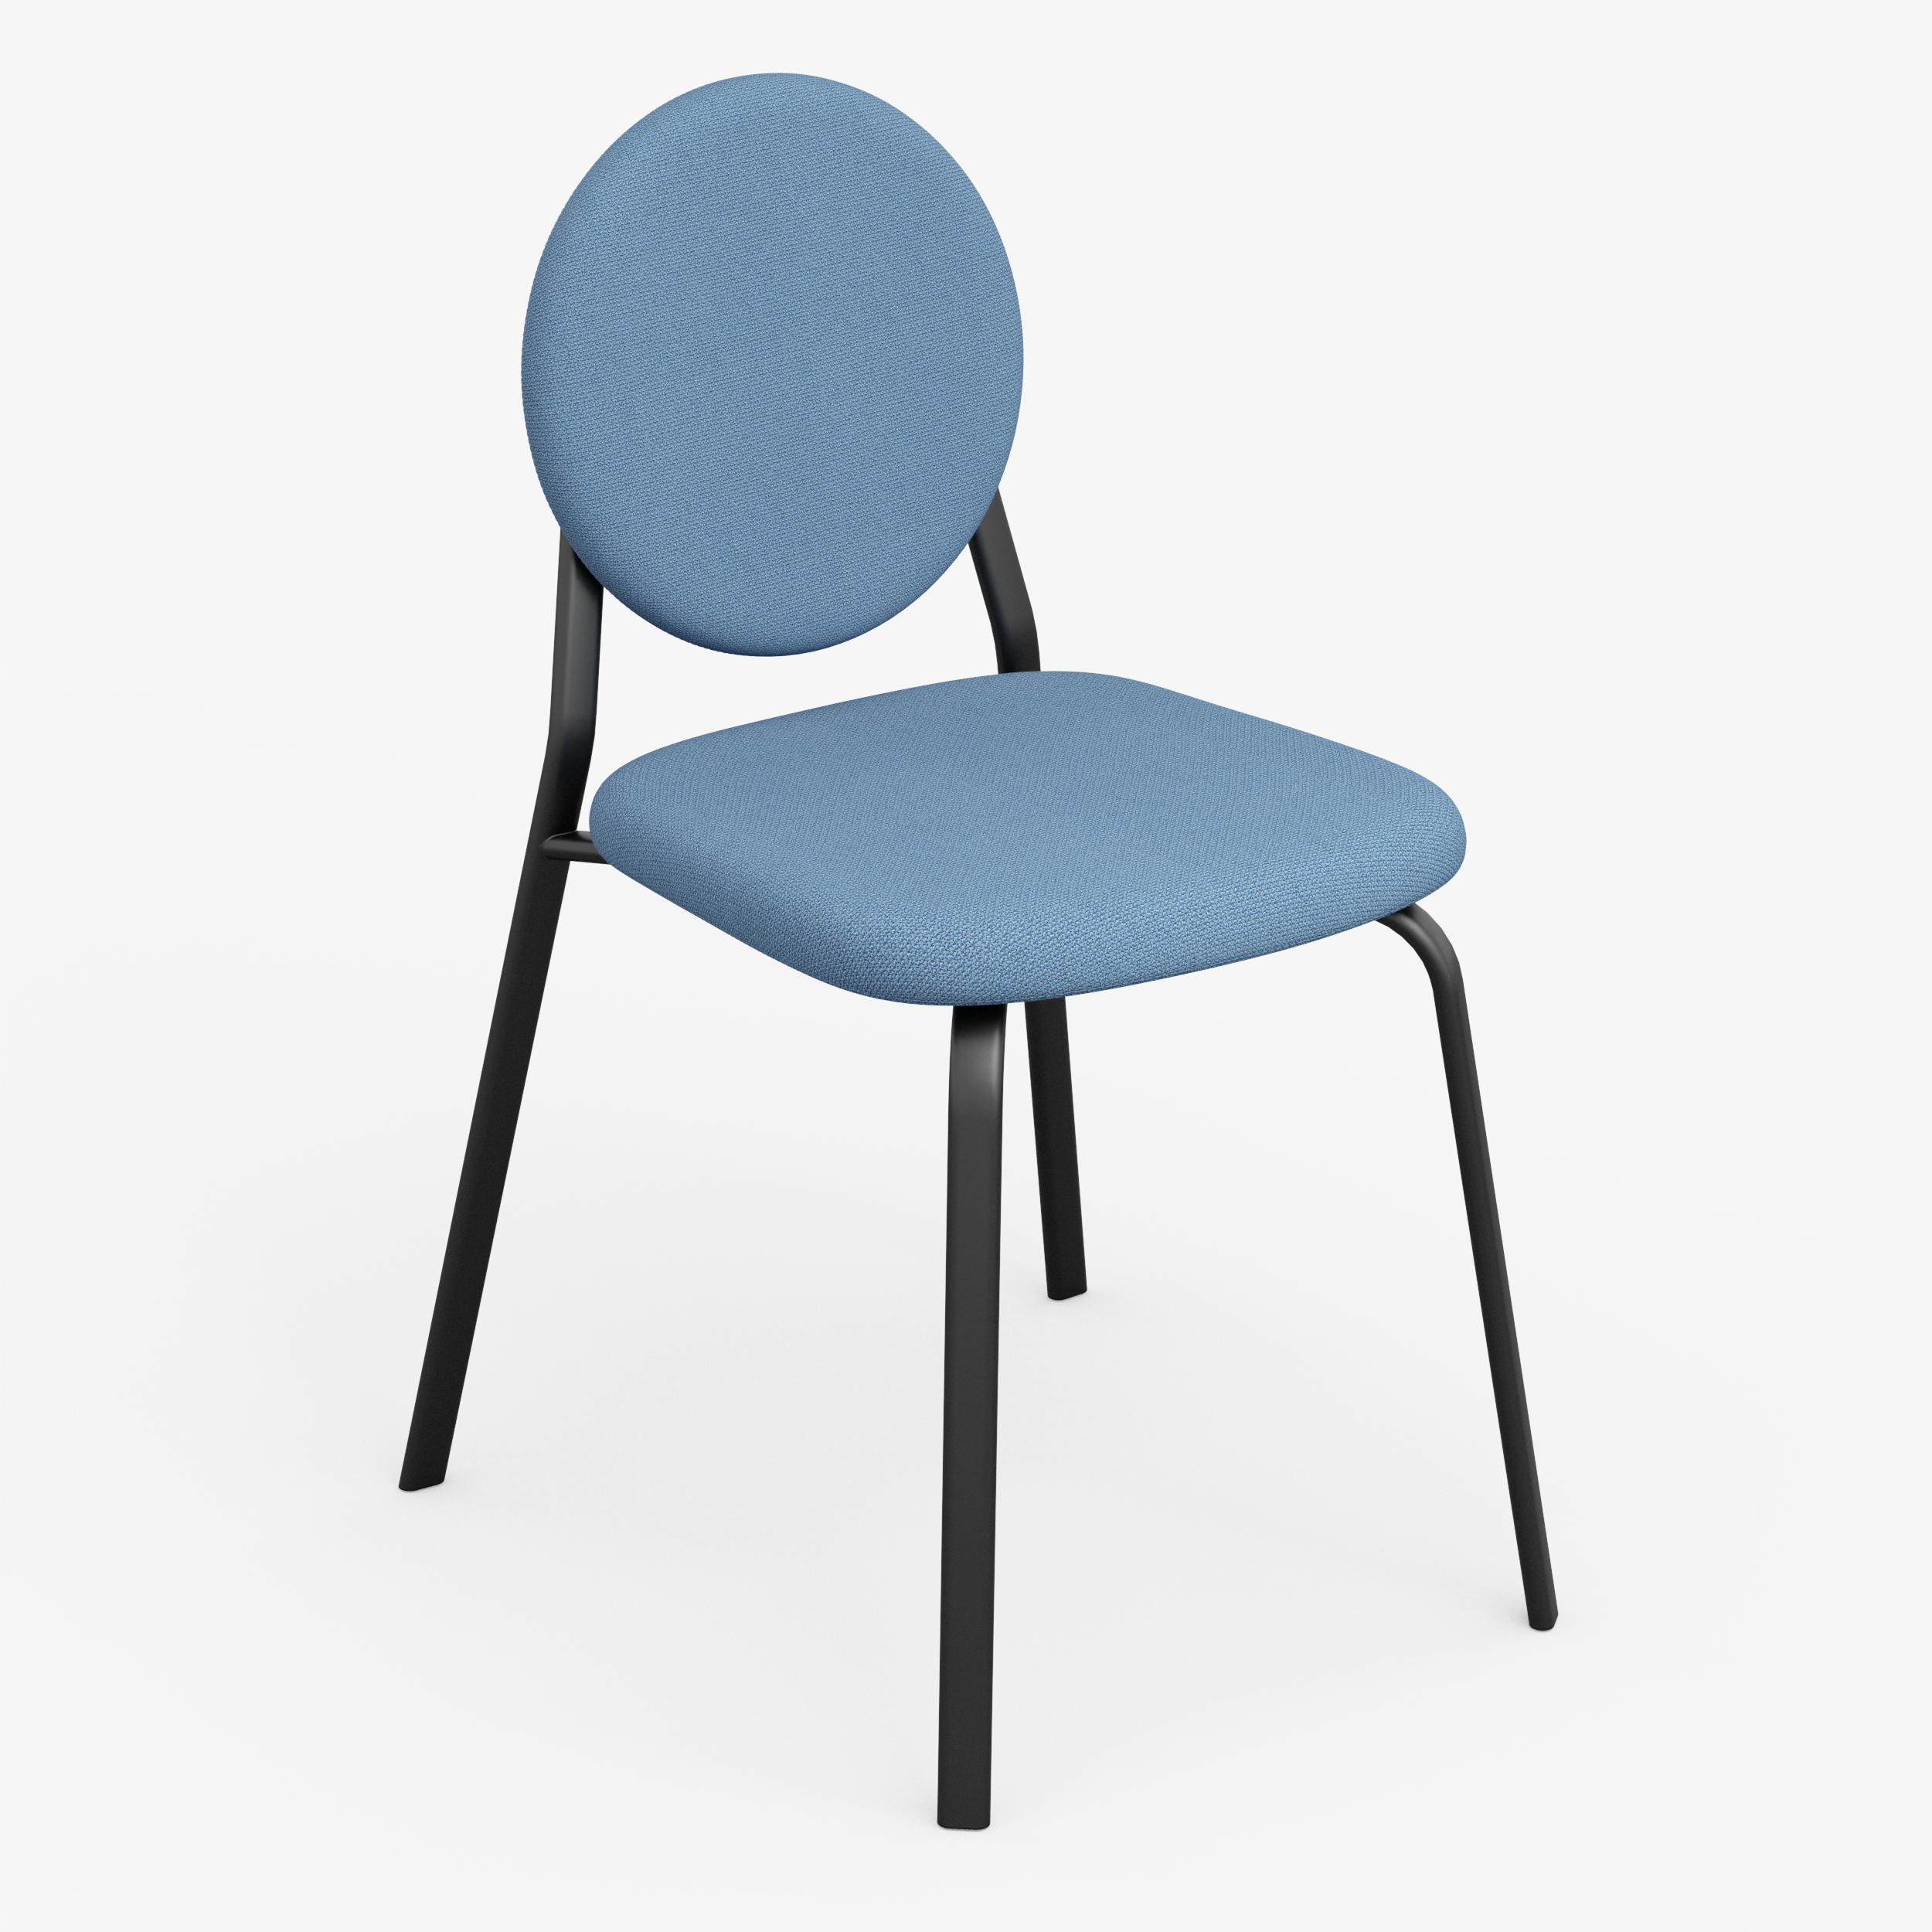 Form - Chair (Round, Denim Blue)